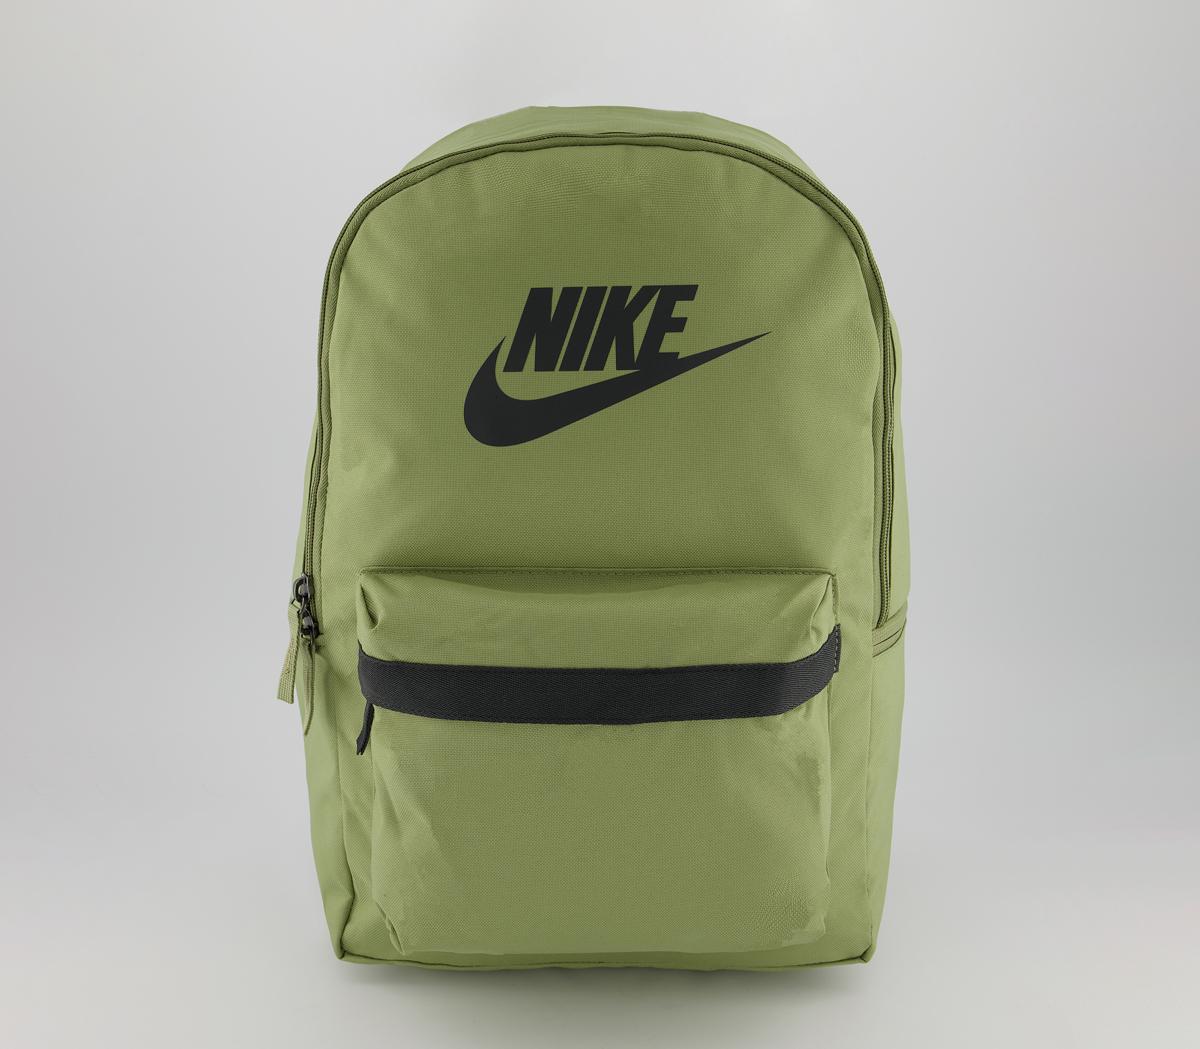 olive green nike backpack